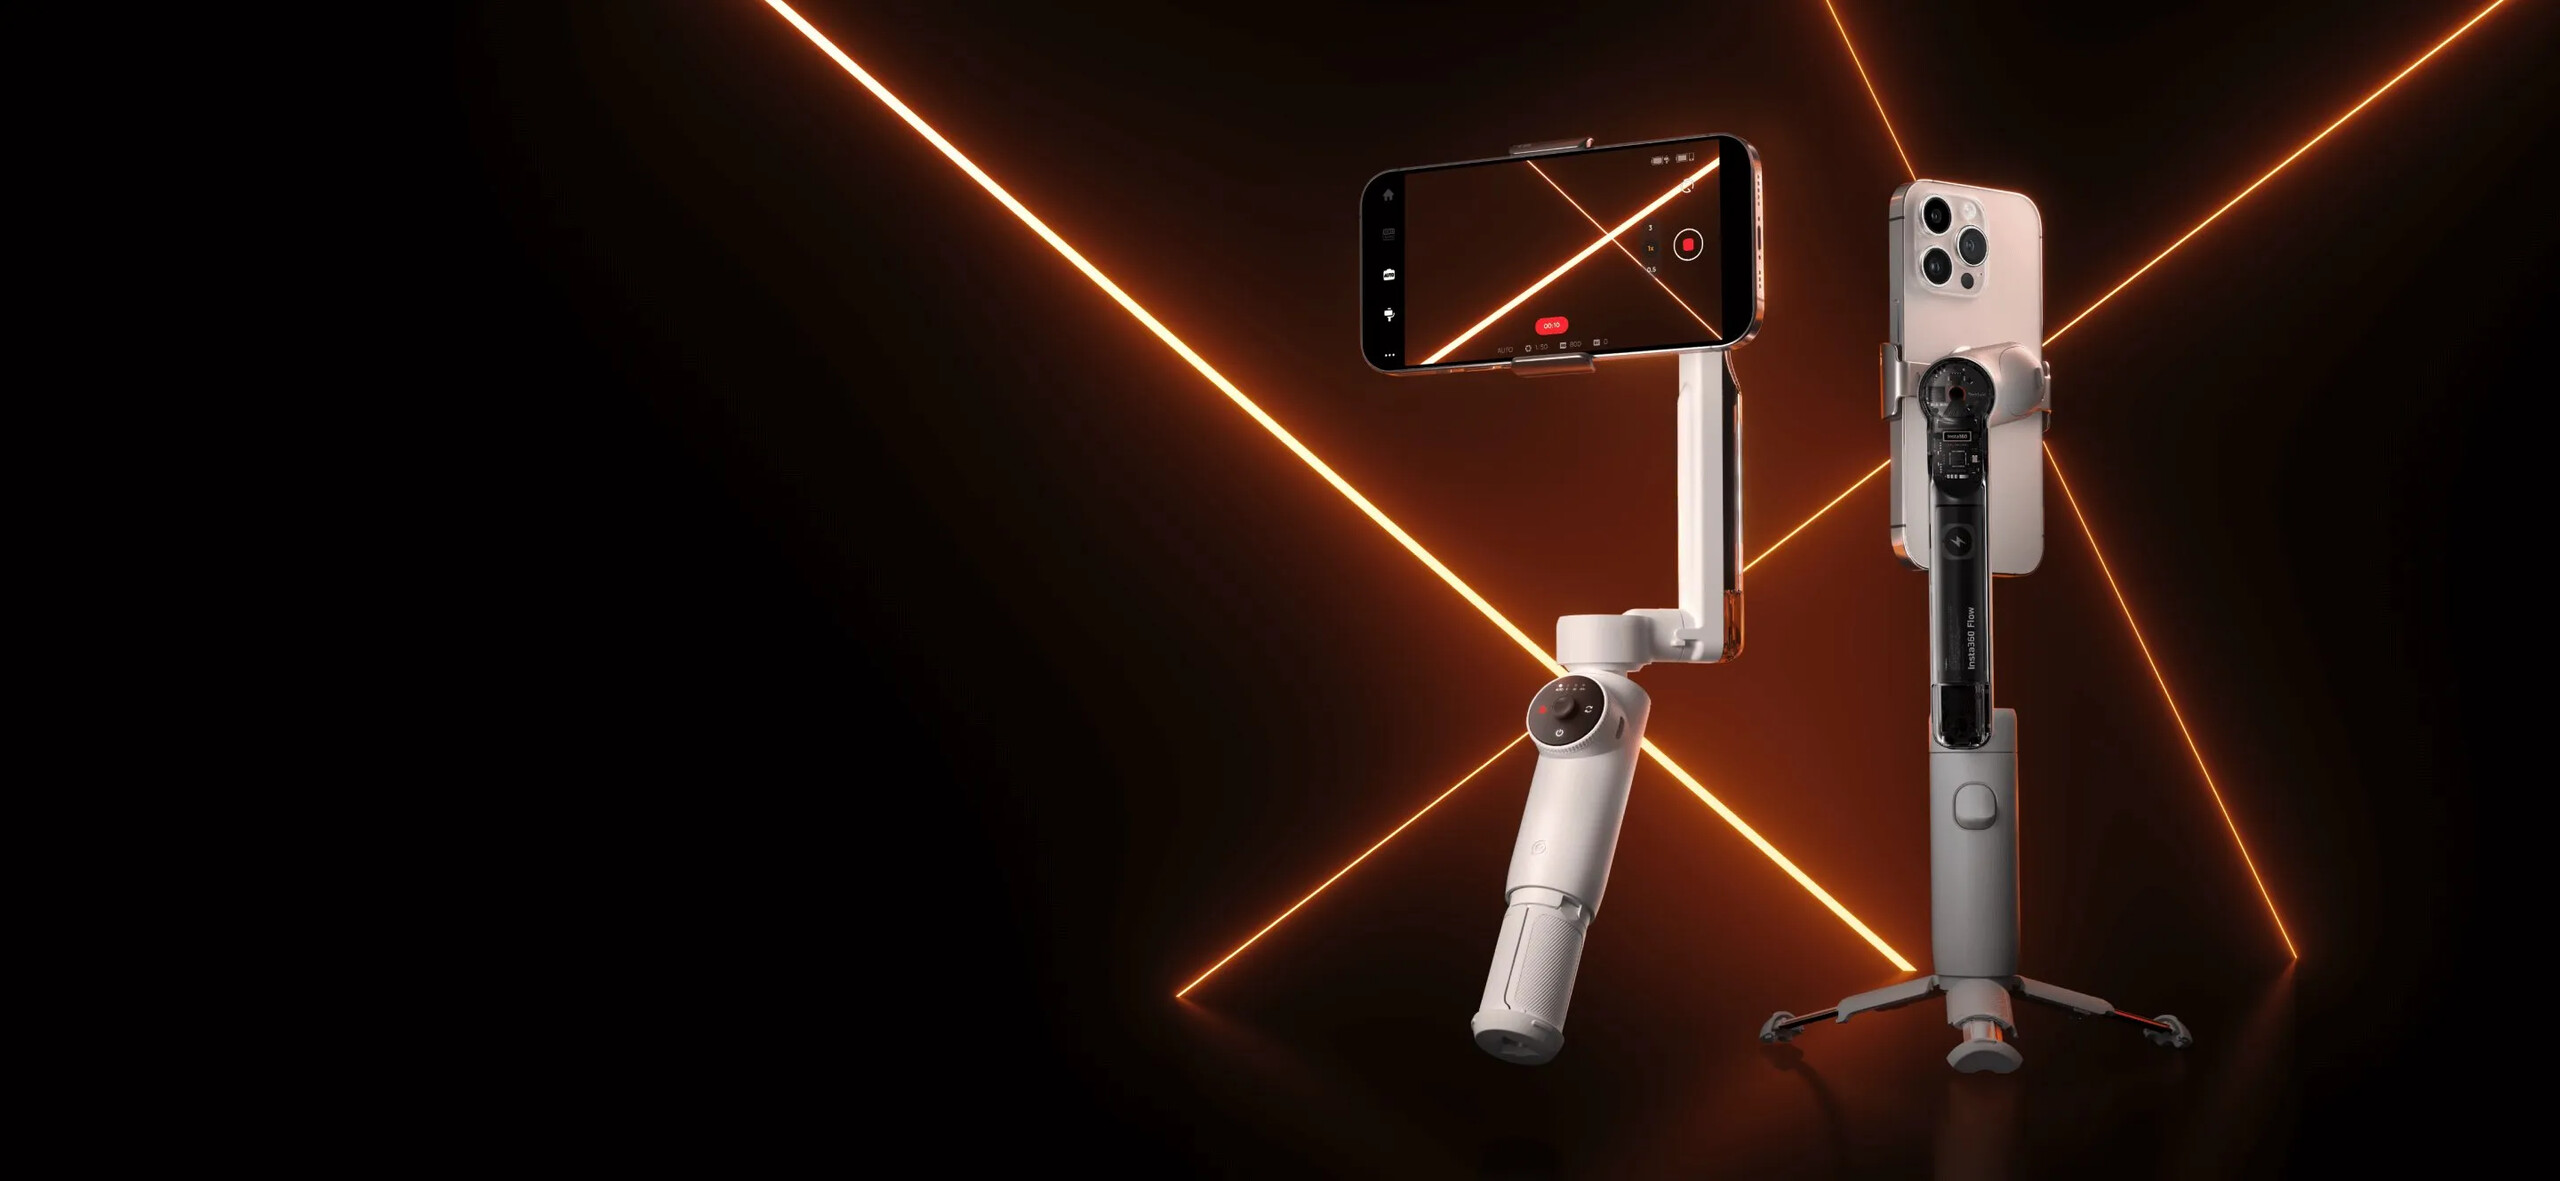 Insta360 Flow AI Powered Smartphone Selfie Stick Tripod Stabilizer